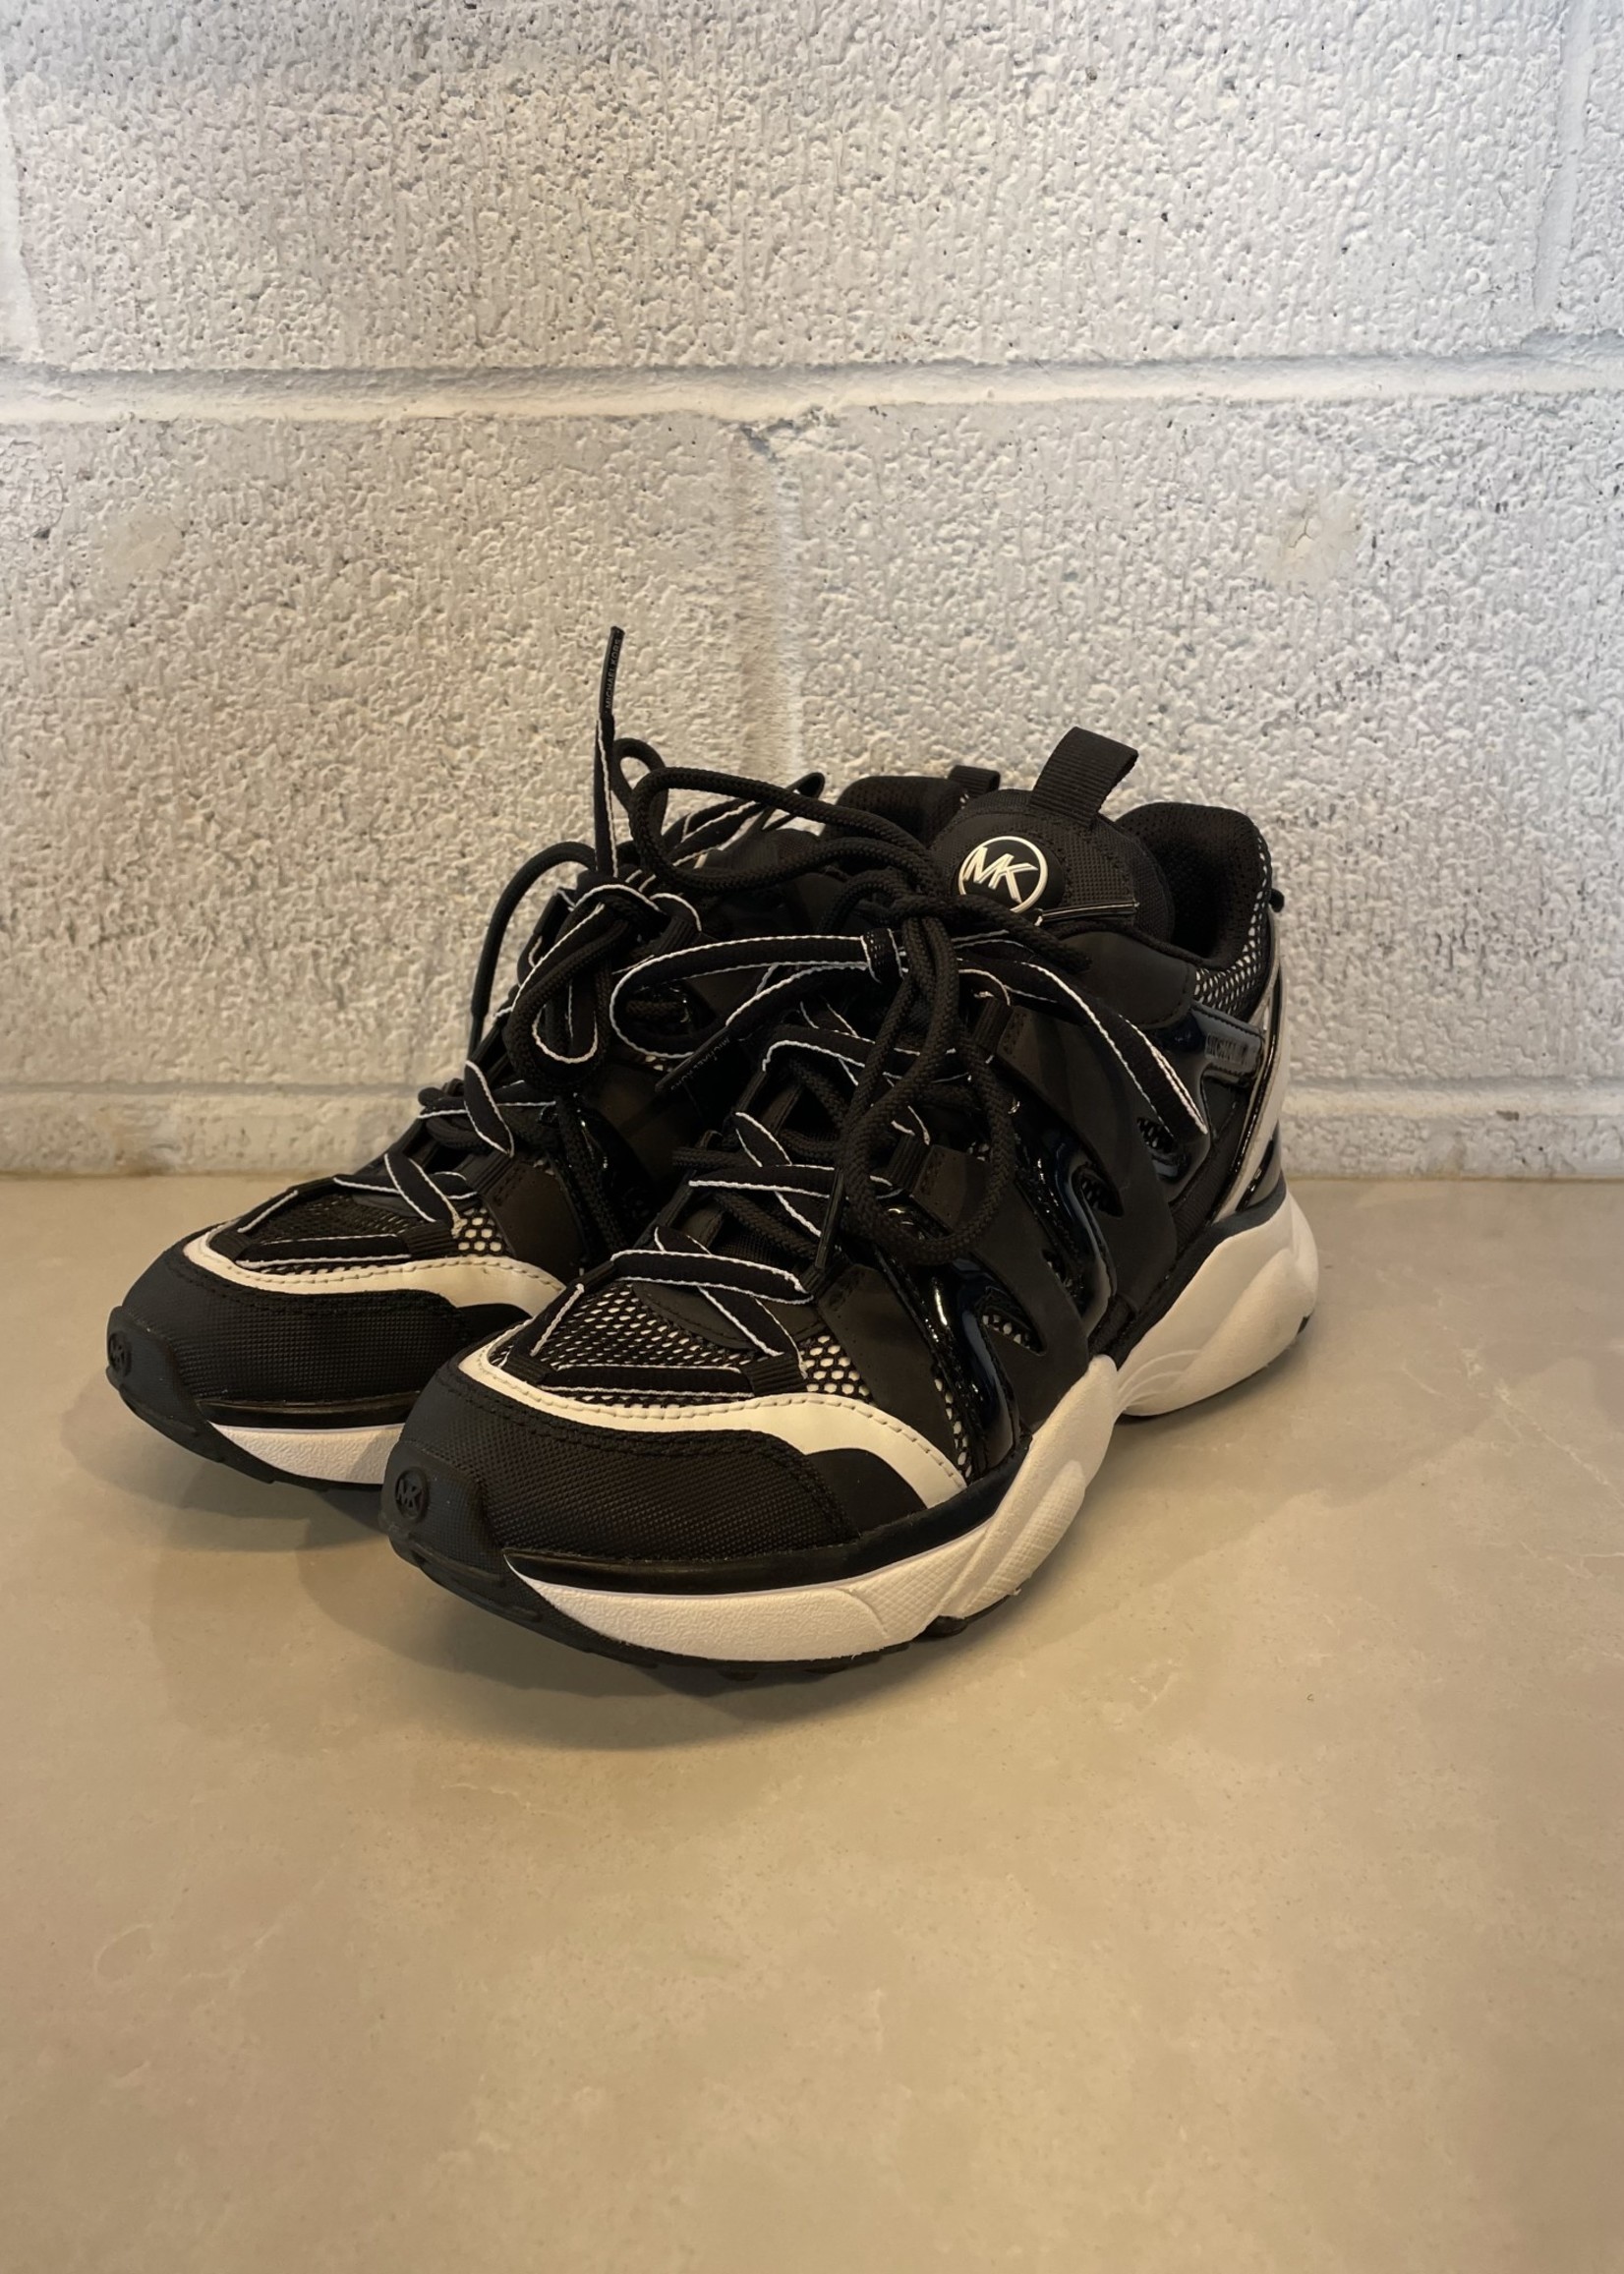 Michael Kors Sneakers 6.5